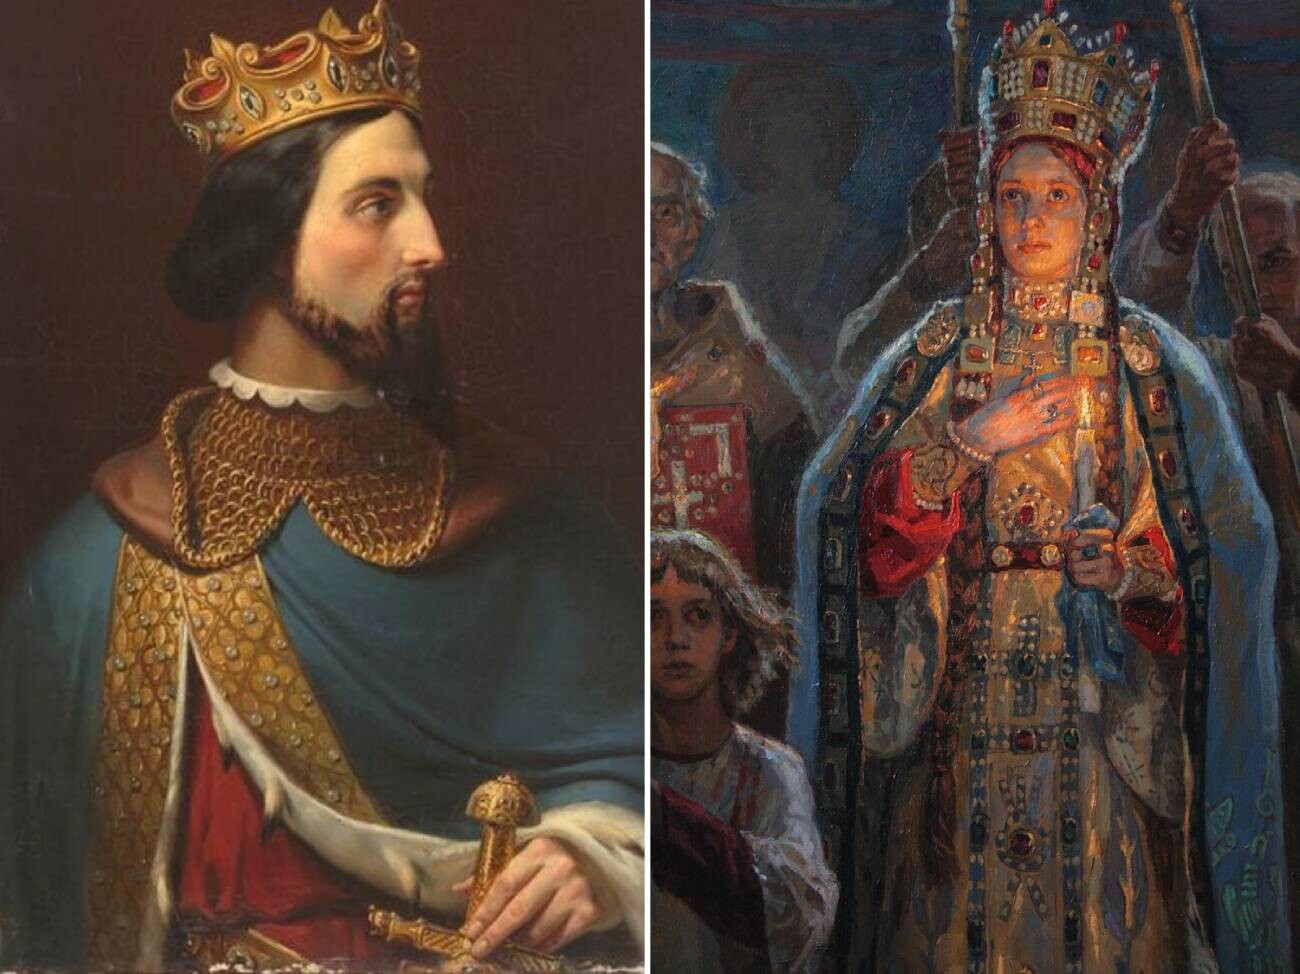 El rey de Francia Enrique I / Ana Yaroslavna

